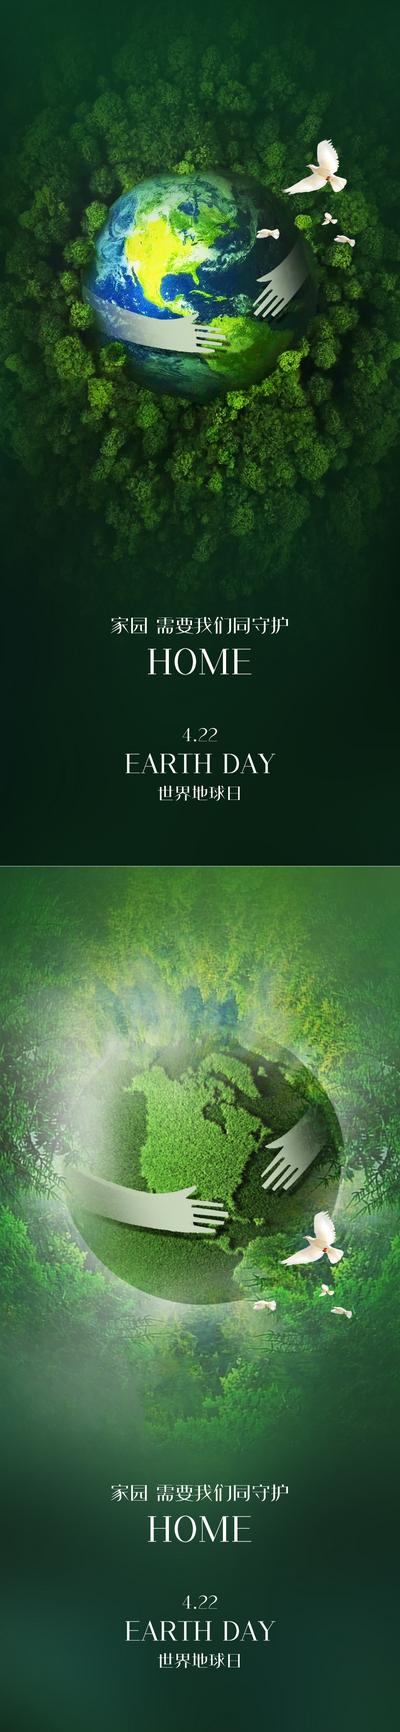 南门网 海报 公历节日 世界地球日 地球 绿色 白鸽 系列